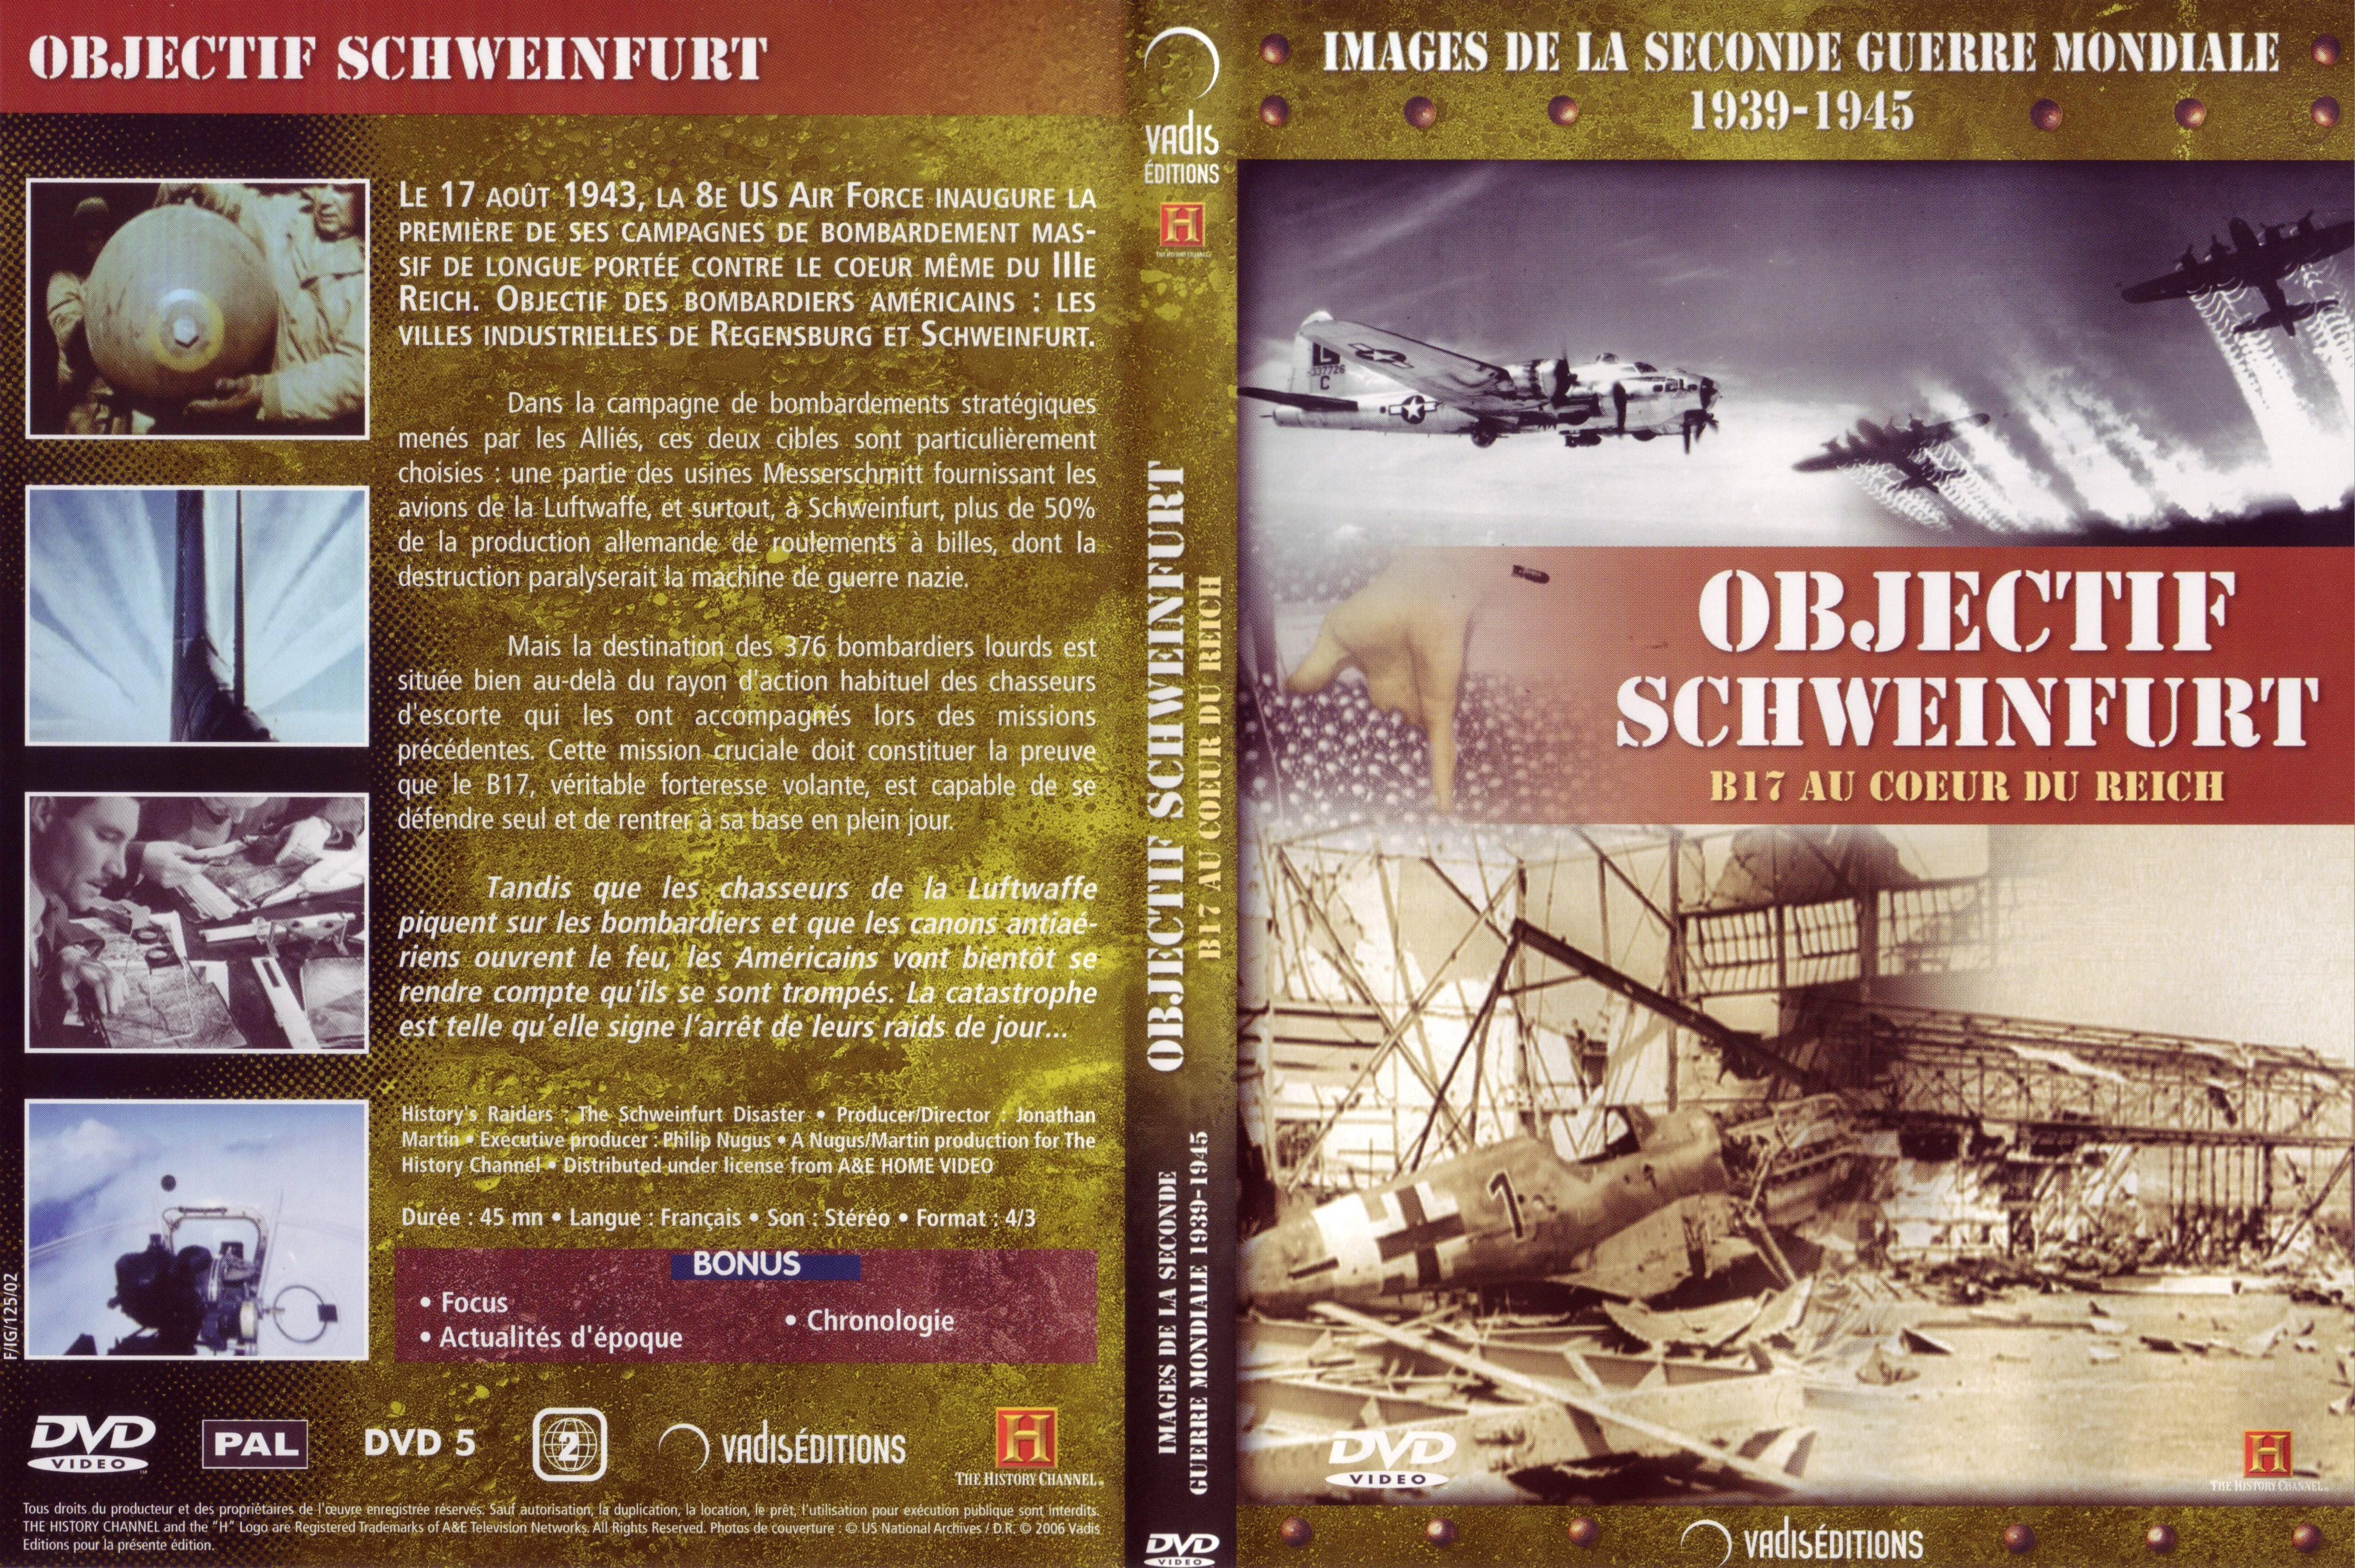 Jaquette DVD Images de la seconde guerre mondiale - Objectif Schweinfurt